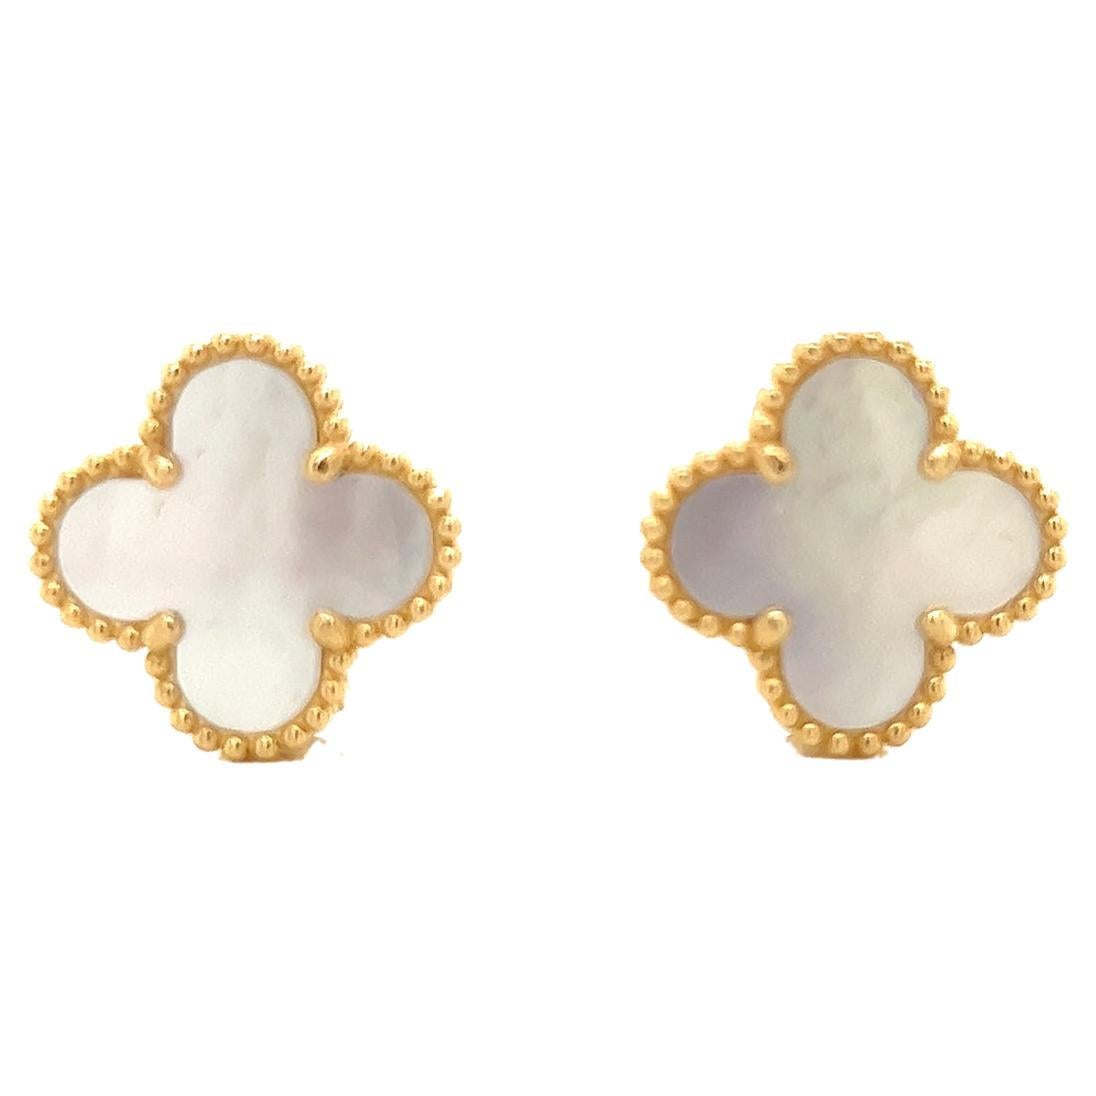 Van Cleef & Arpels Alhambra Mother of Pearl 18KYG Earrings Box and Papers